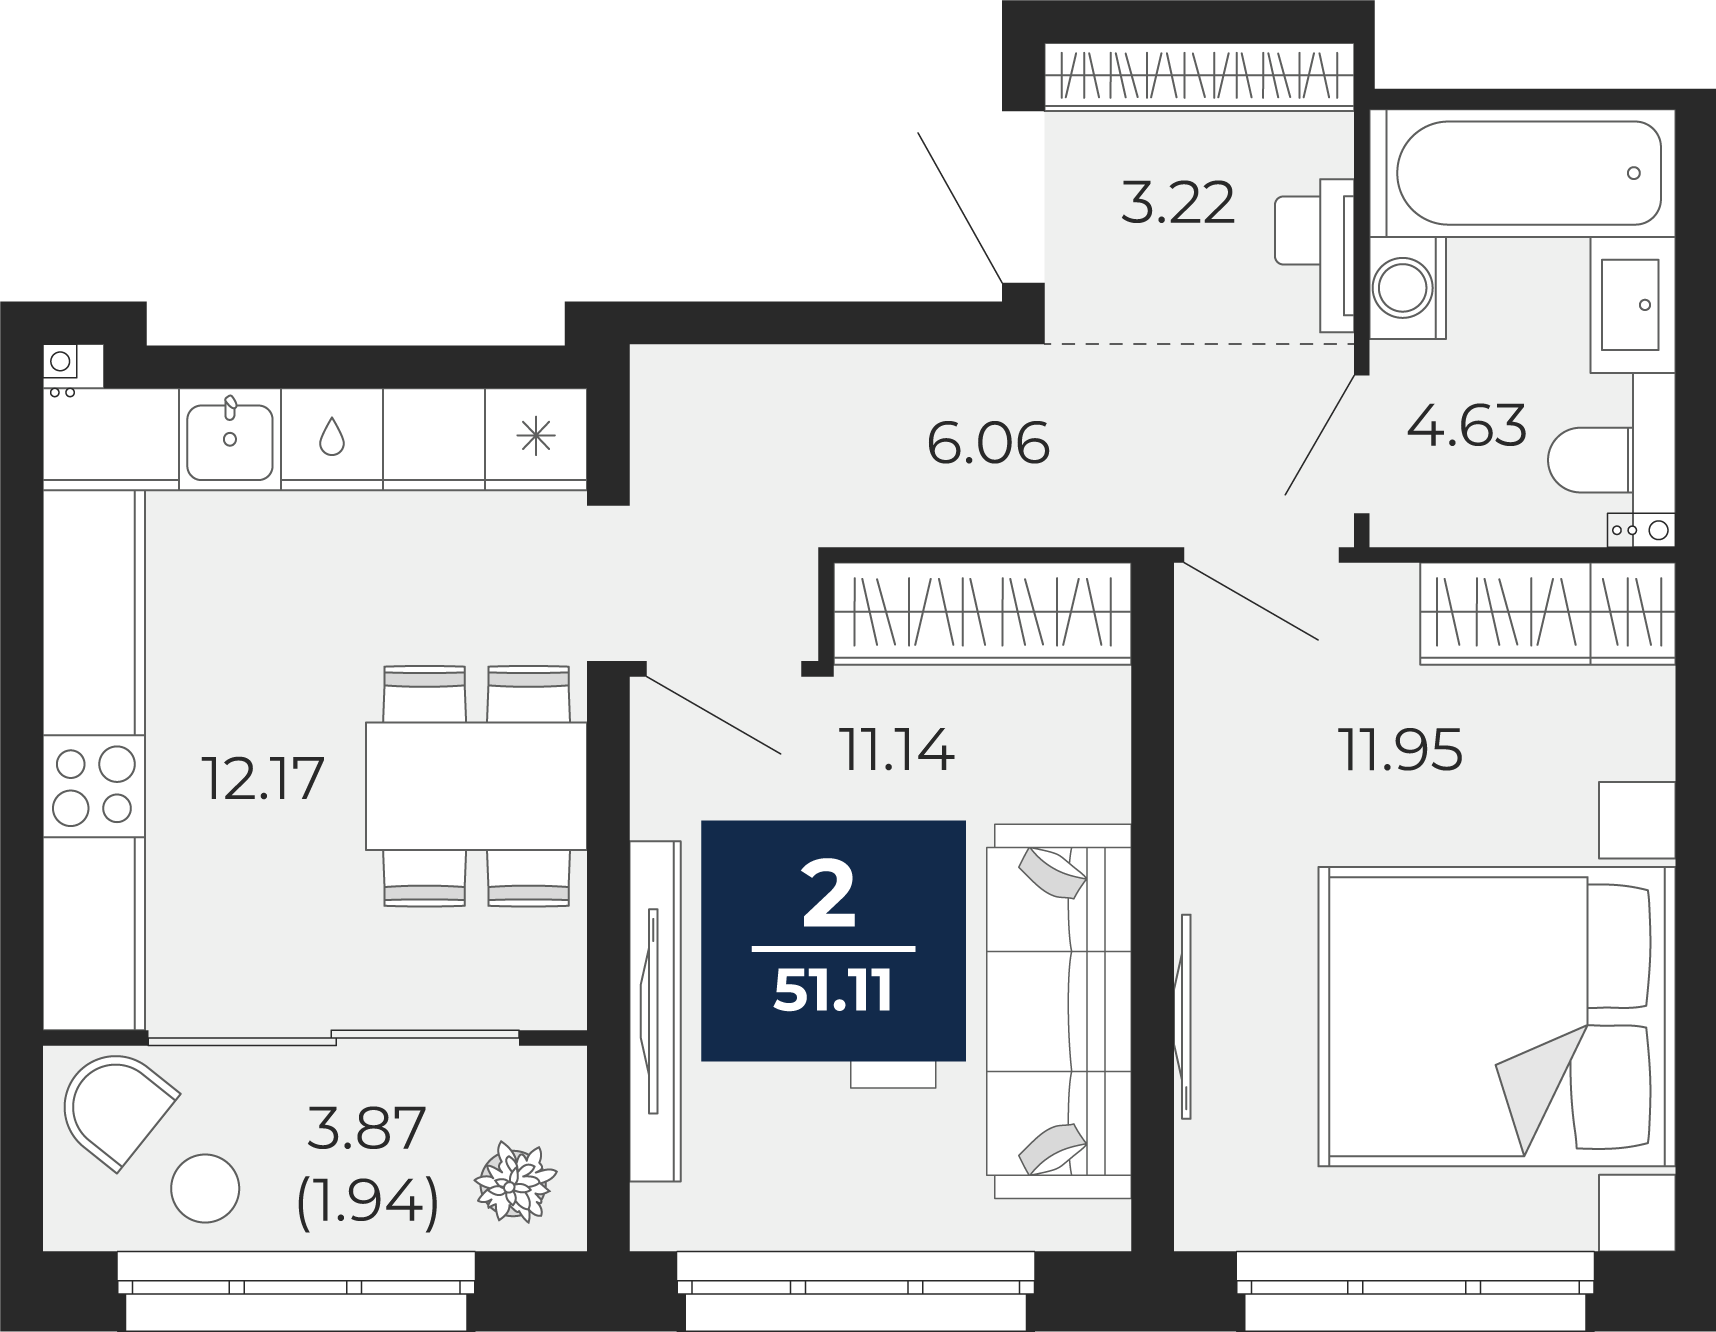 Квартира № 39, 2-комнатная, 51.11 кв. м, 9 этаж